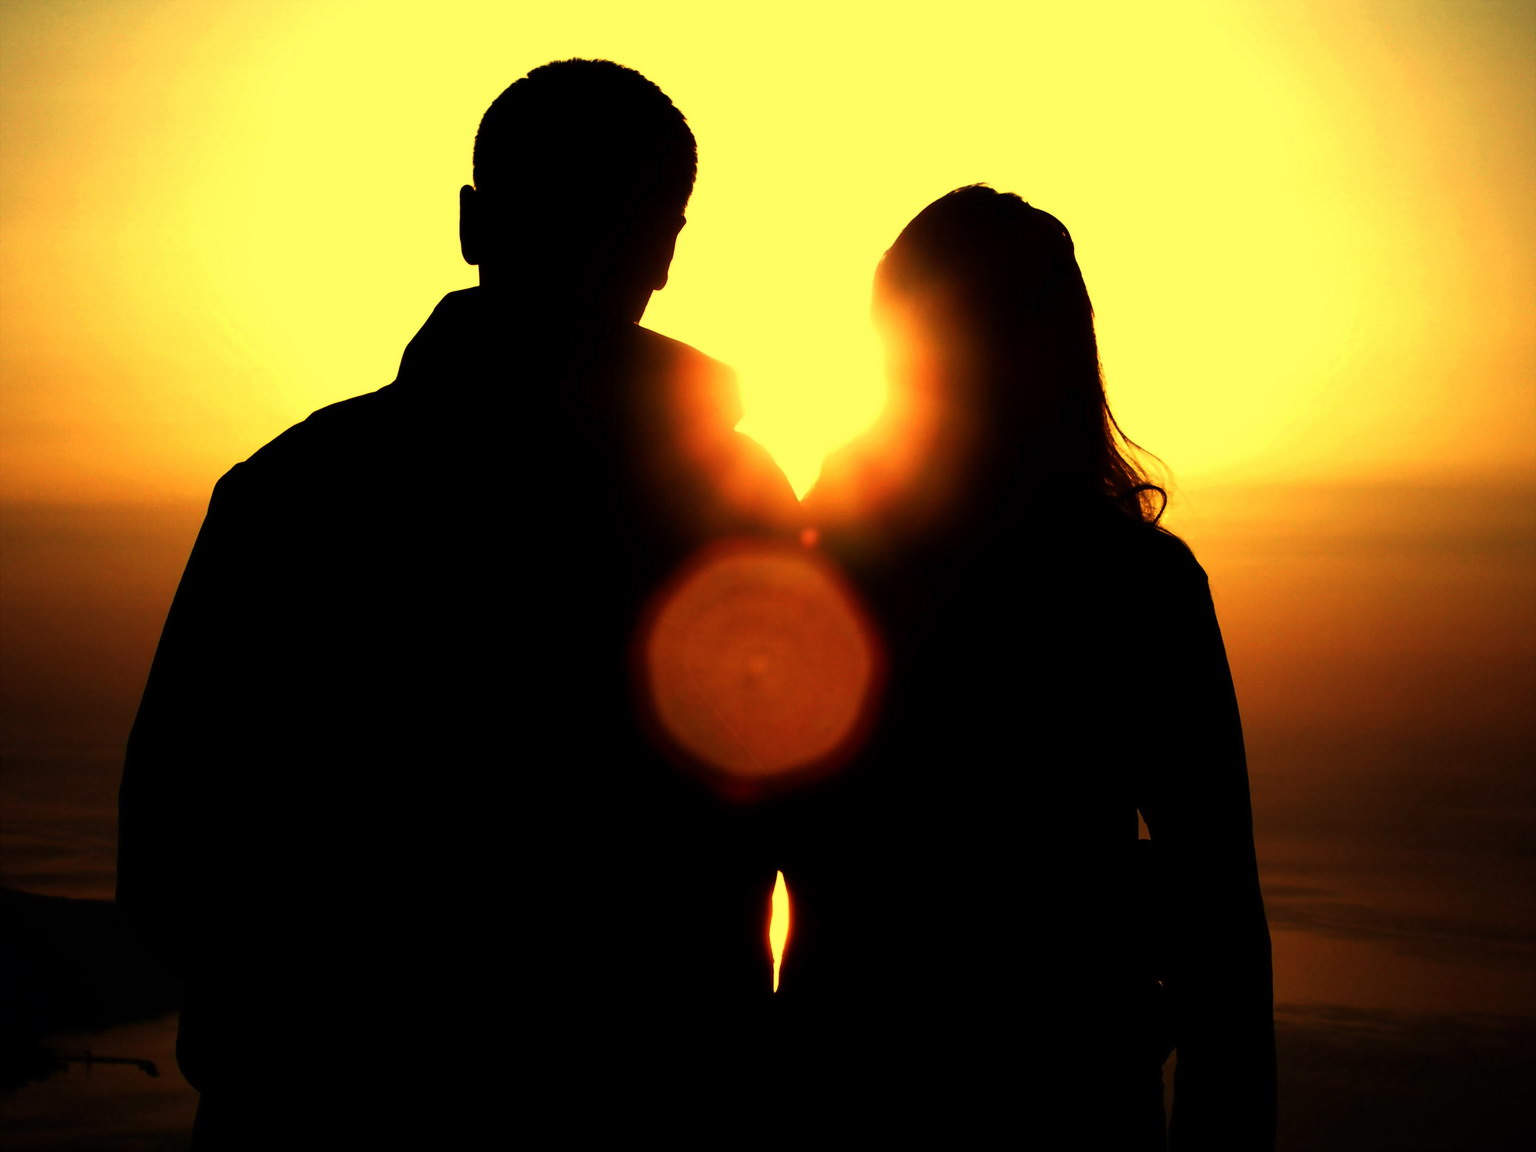 Закат вместе. Мужчина и женщина на закате. Два человека на закате. Два силуэта на закате солнца.